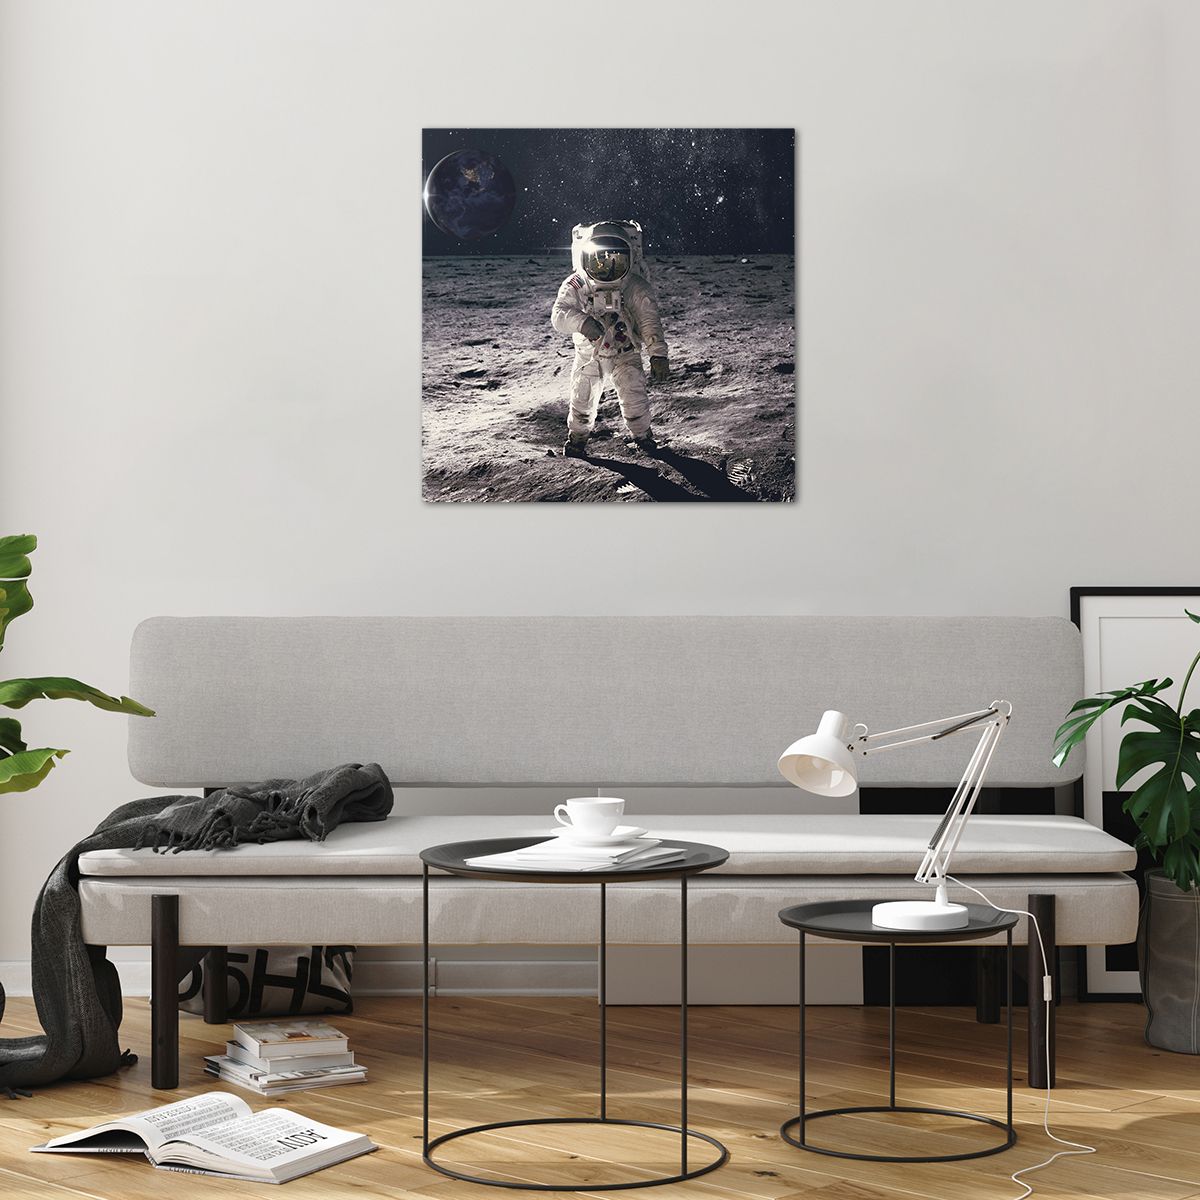 Bilder auf glas Abstraktion, Bilder auf glas Mann Im Mond, Bilder auf glas Astronaut, Bilder auf glas Kosmos, Bilder auf glas Mond